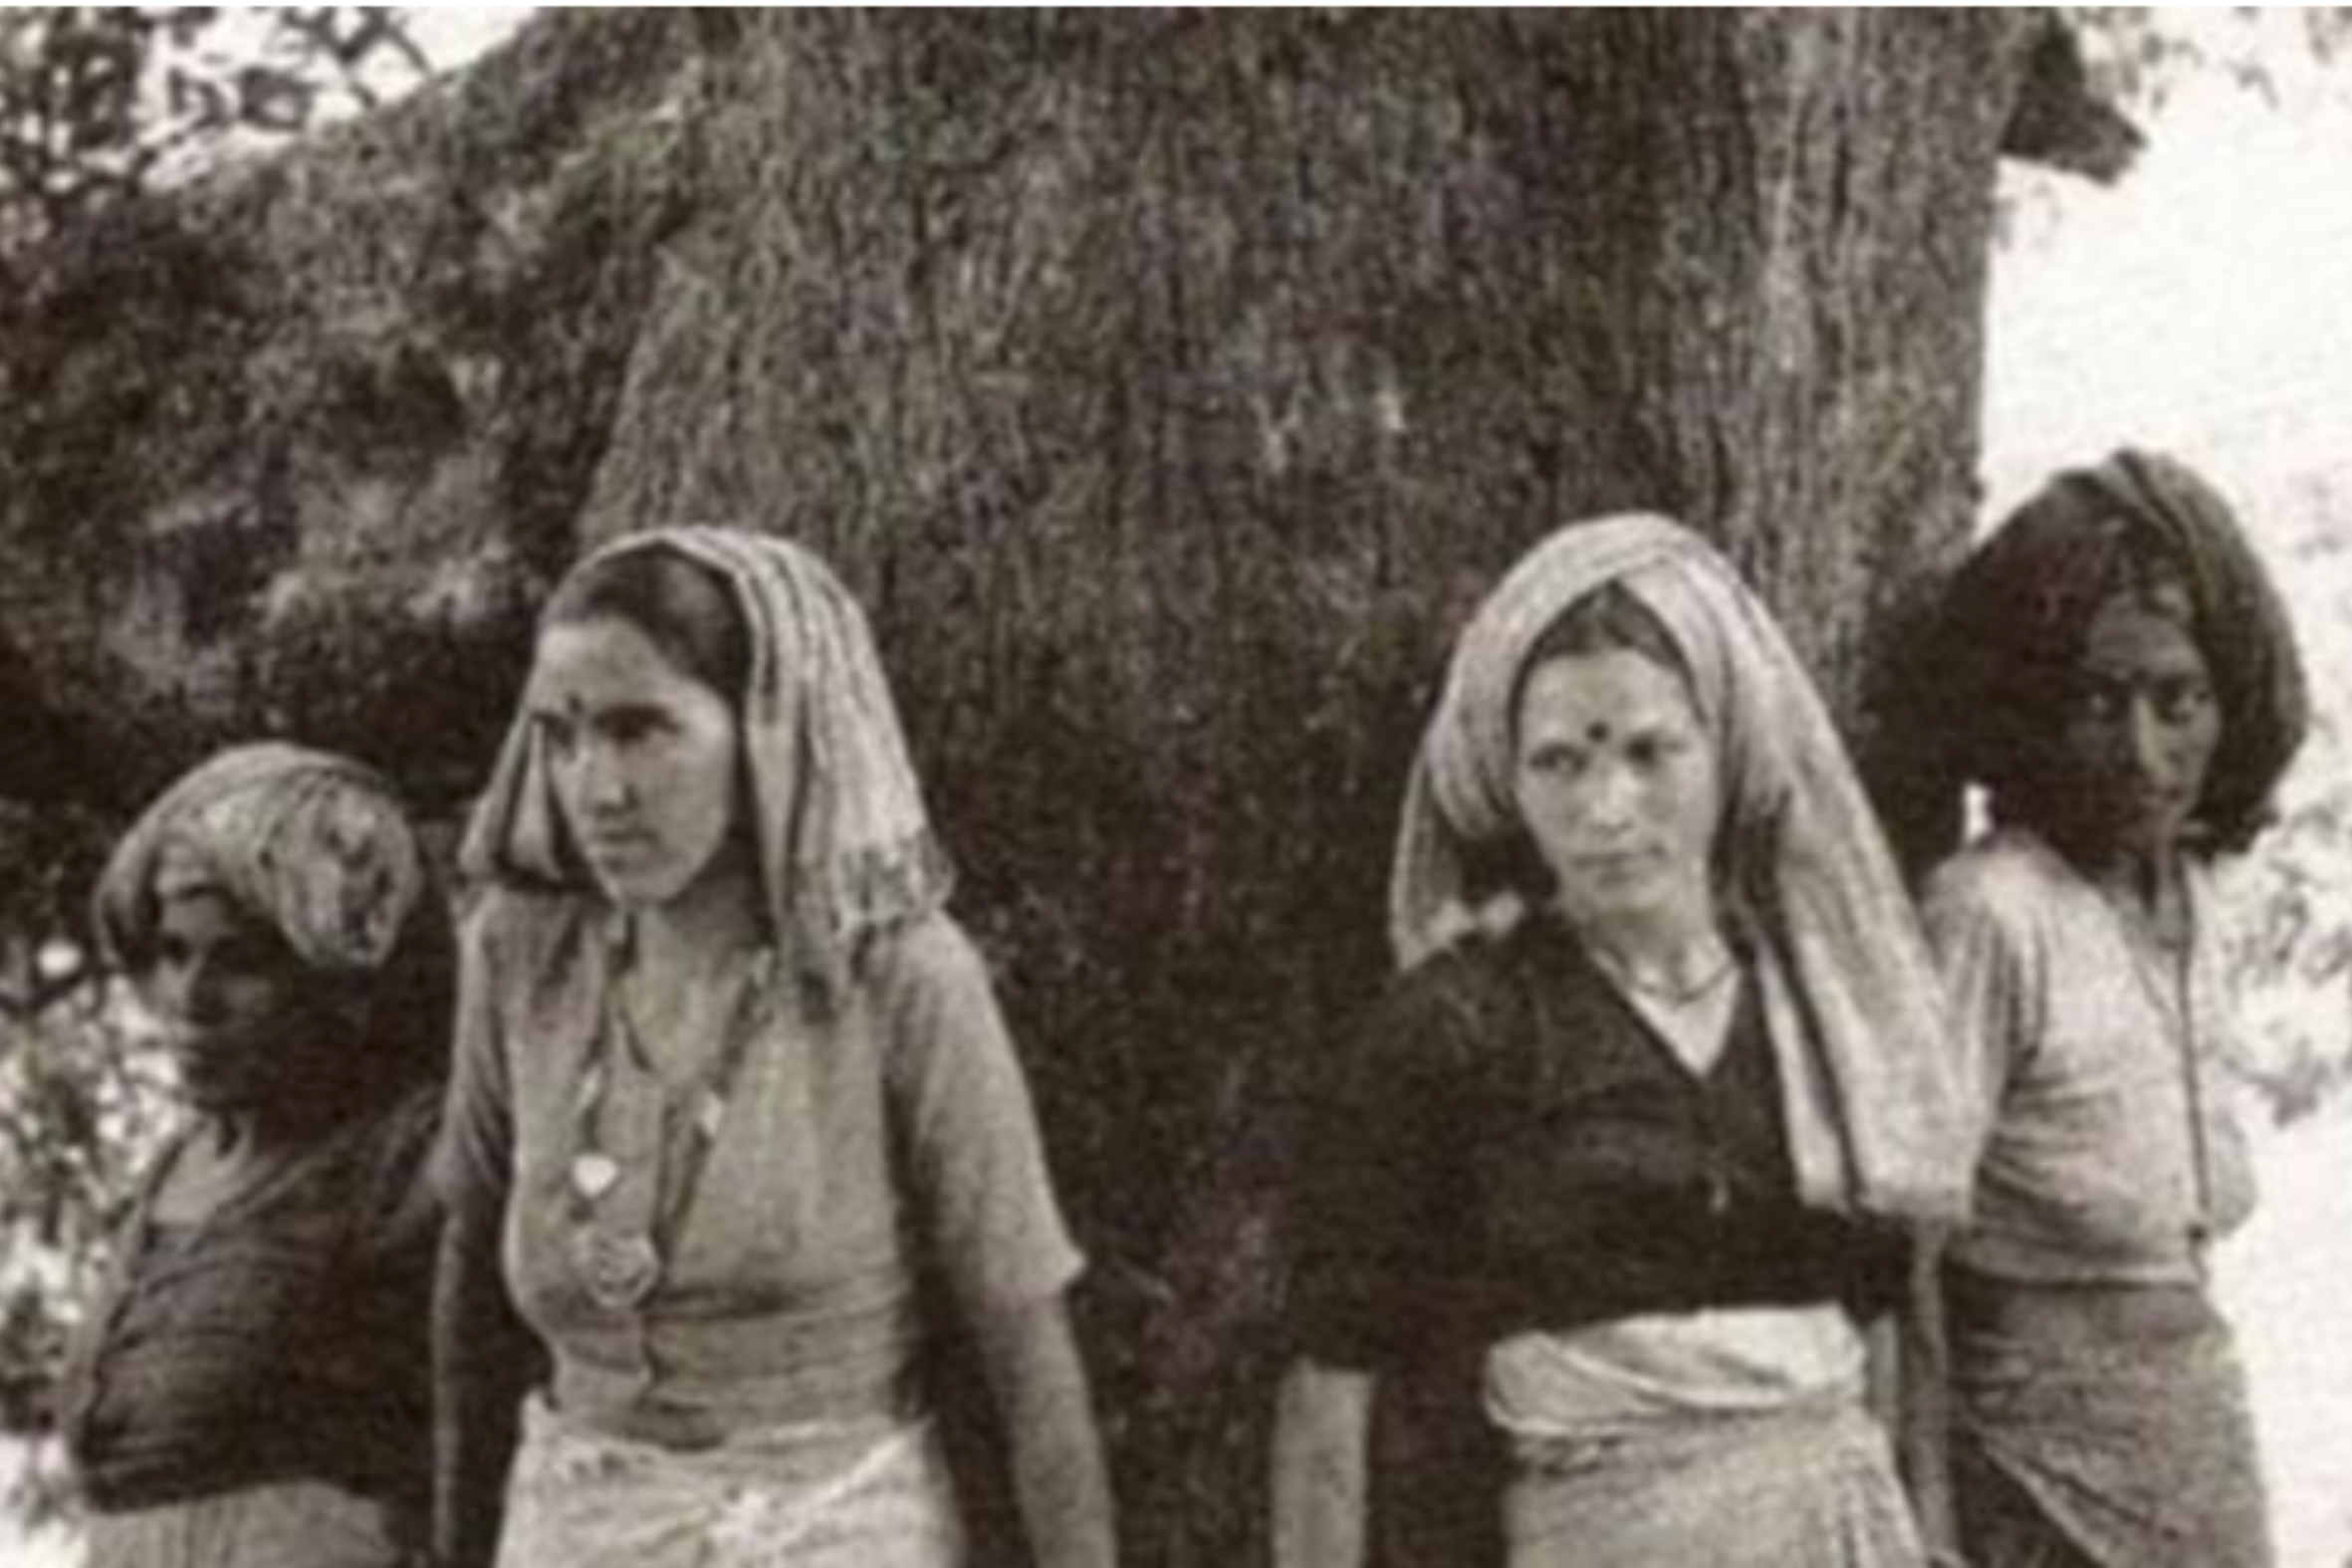 Les dones del moviment Chipko, a l’Índia dels setanta.